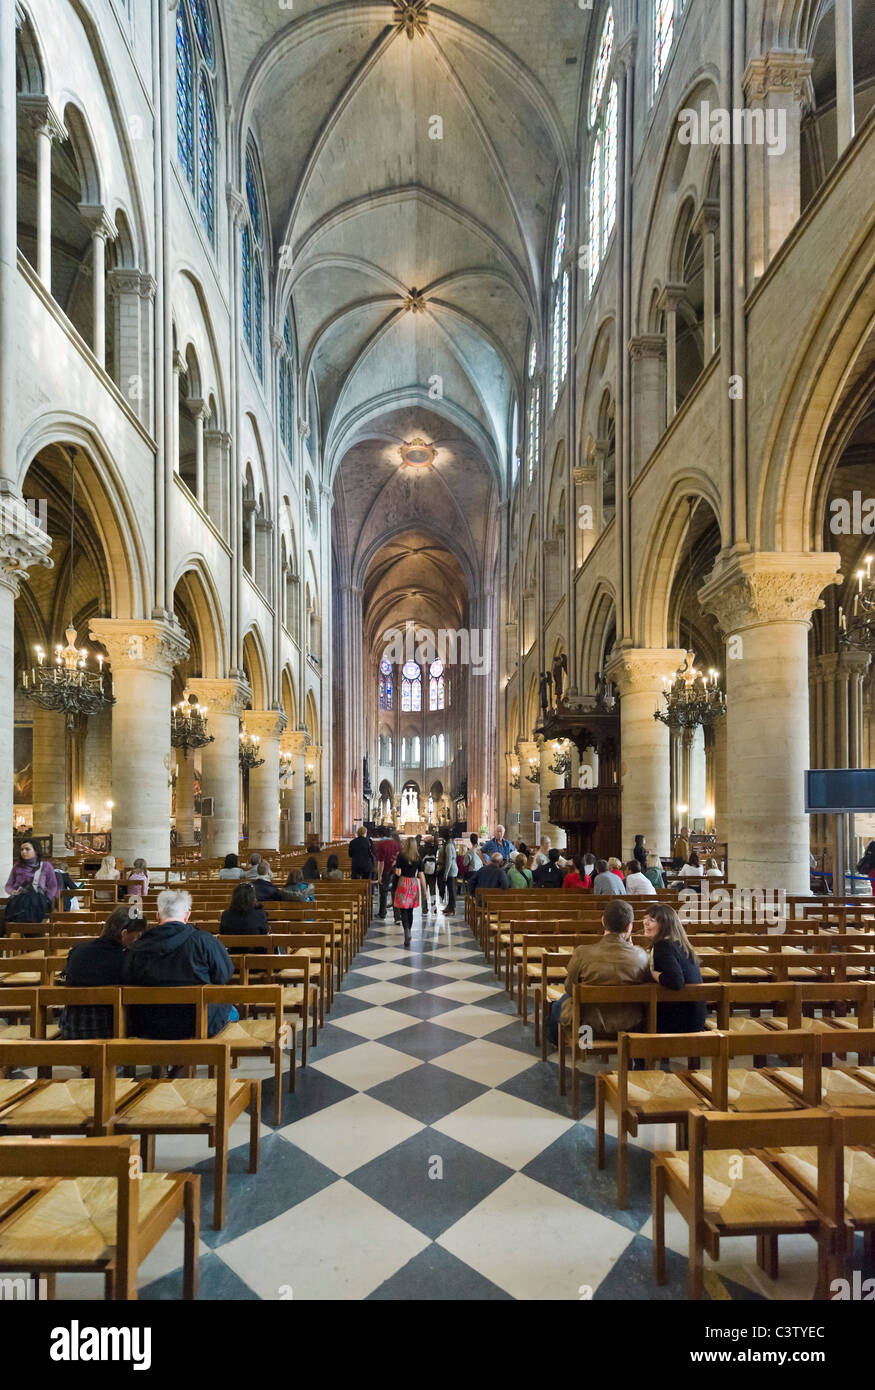 Interior of the Cathedral of Notre Dame de Paris, Ile de la Cite, Paris, France Stock Photo